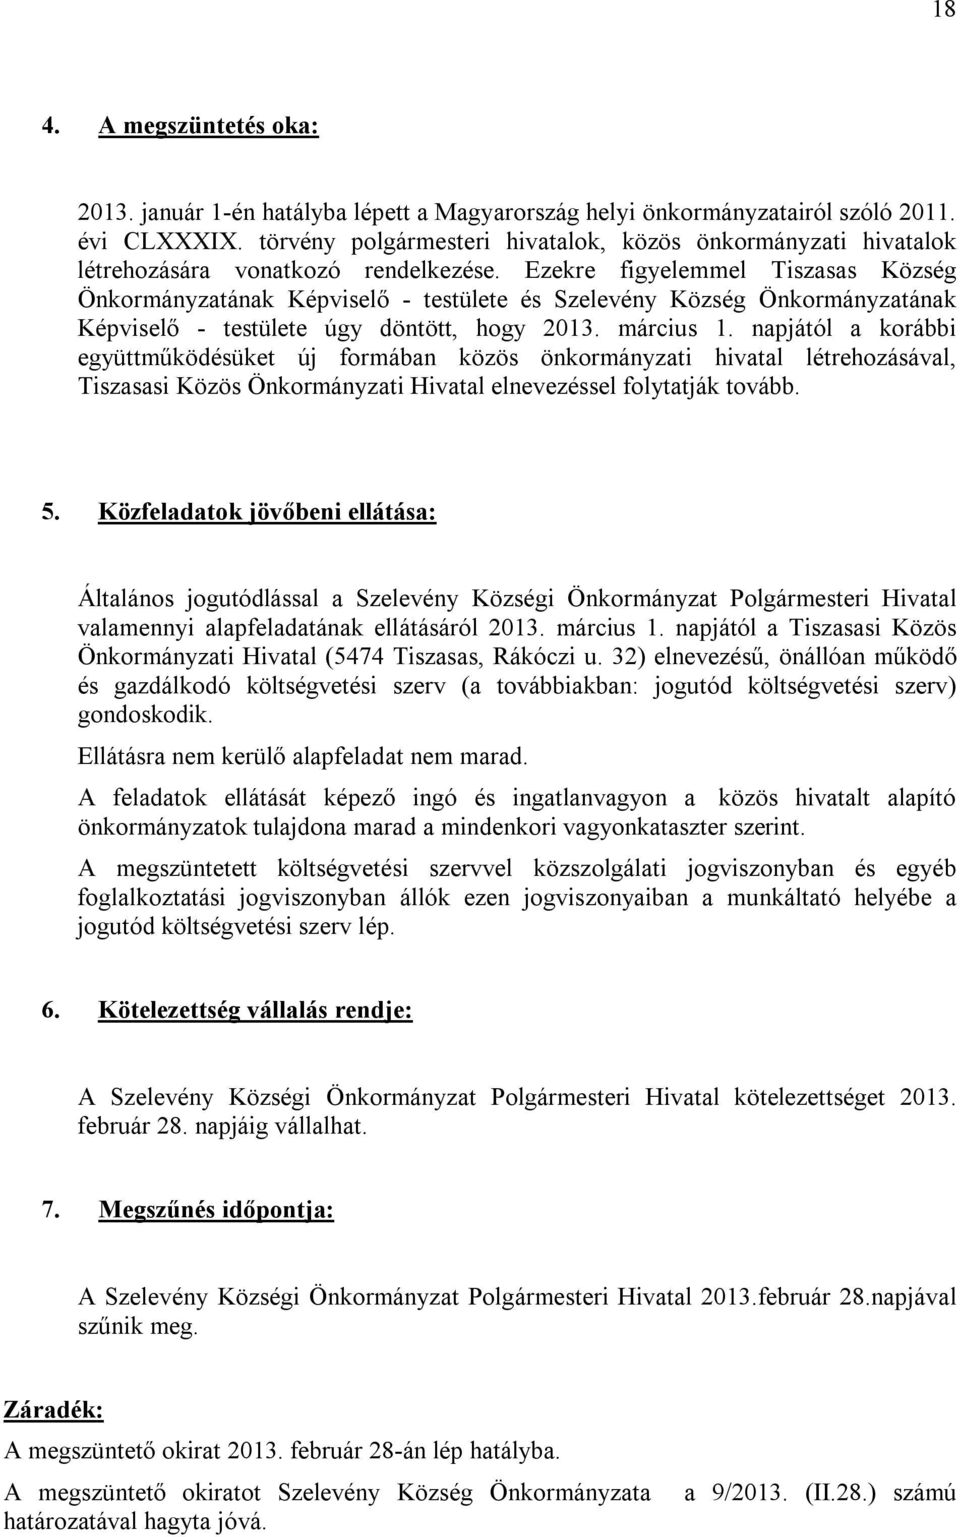 Ezekre figyelemmel Tiszasas Község Önkormányzatának Képviselő - testülete és Szelevény Község Önkormányzatának Képviselő - testülete úgy döntött, hogy 2013. március 1.